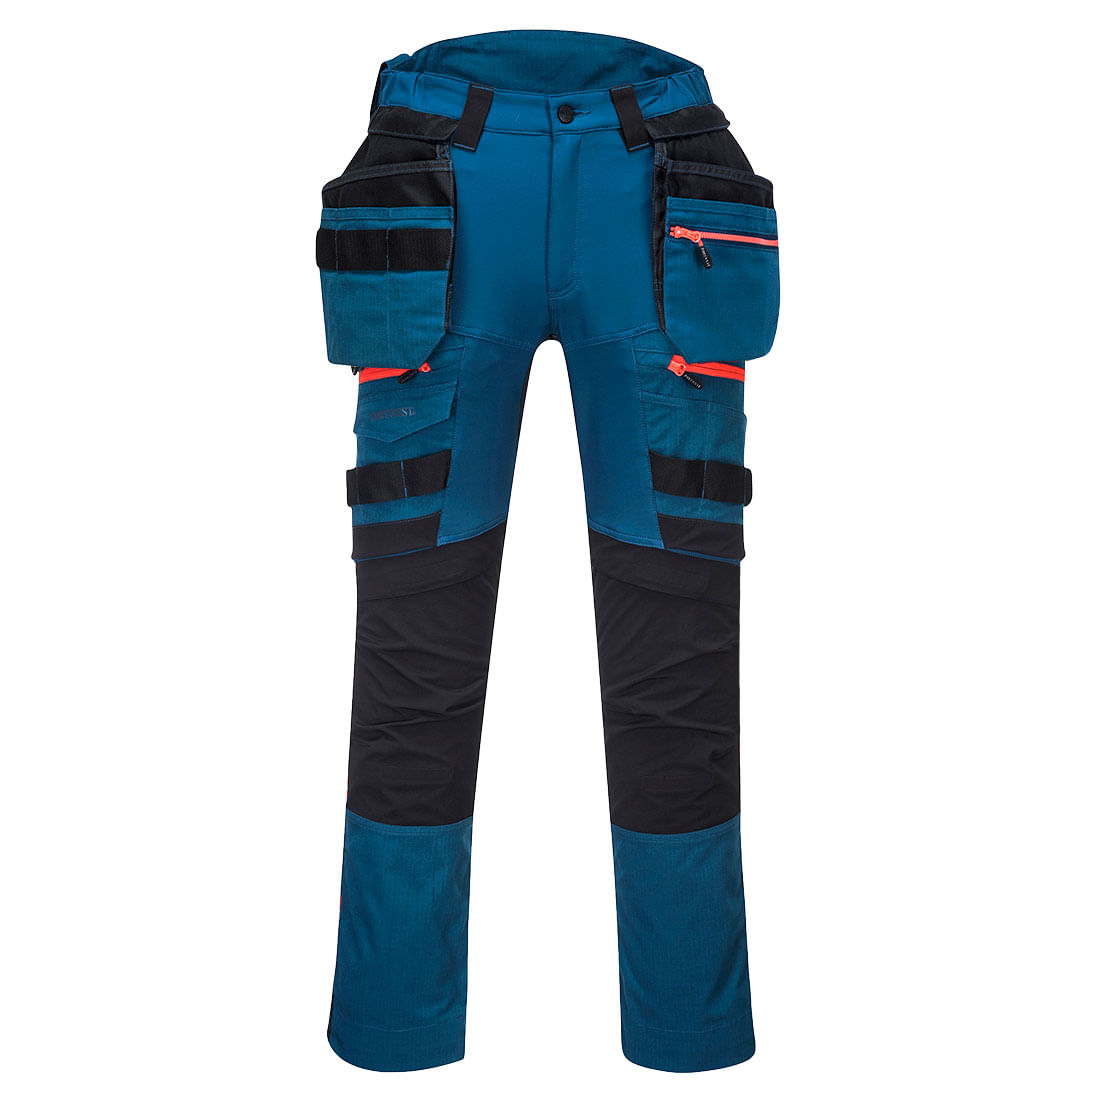 Pantaloni de protectie negru/albastru Portwest DX3 Marime 41 dacris.net imagine 2022 depozituldepapetarie.ro